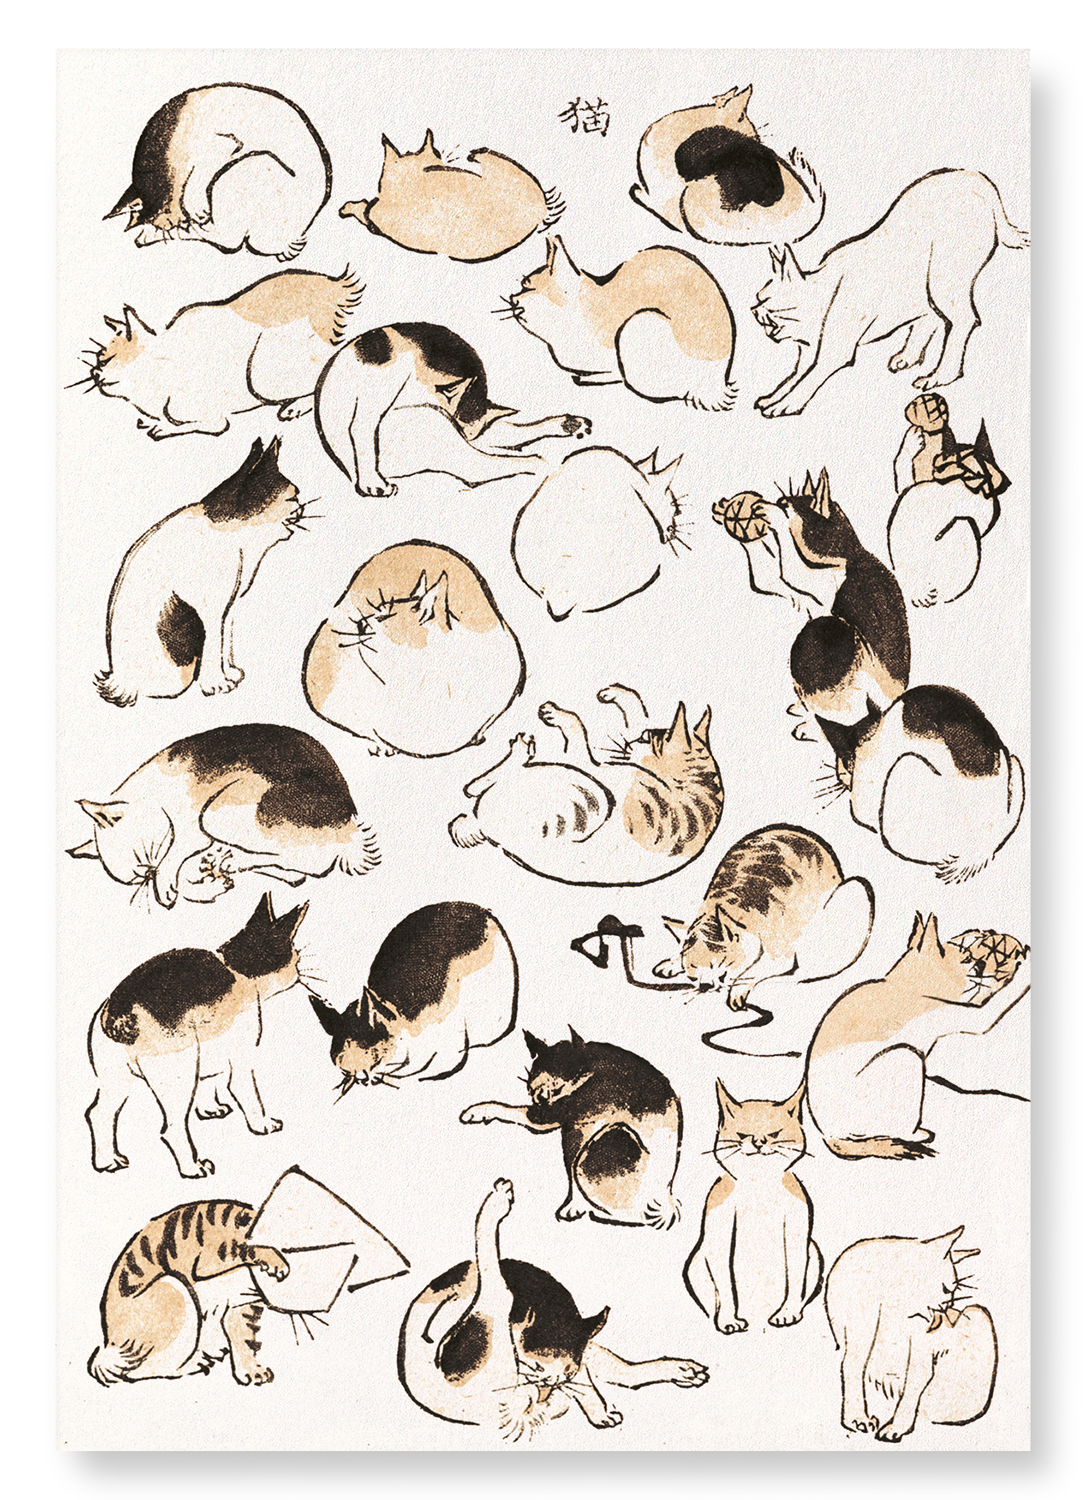 CATS (C.1830)